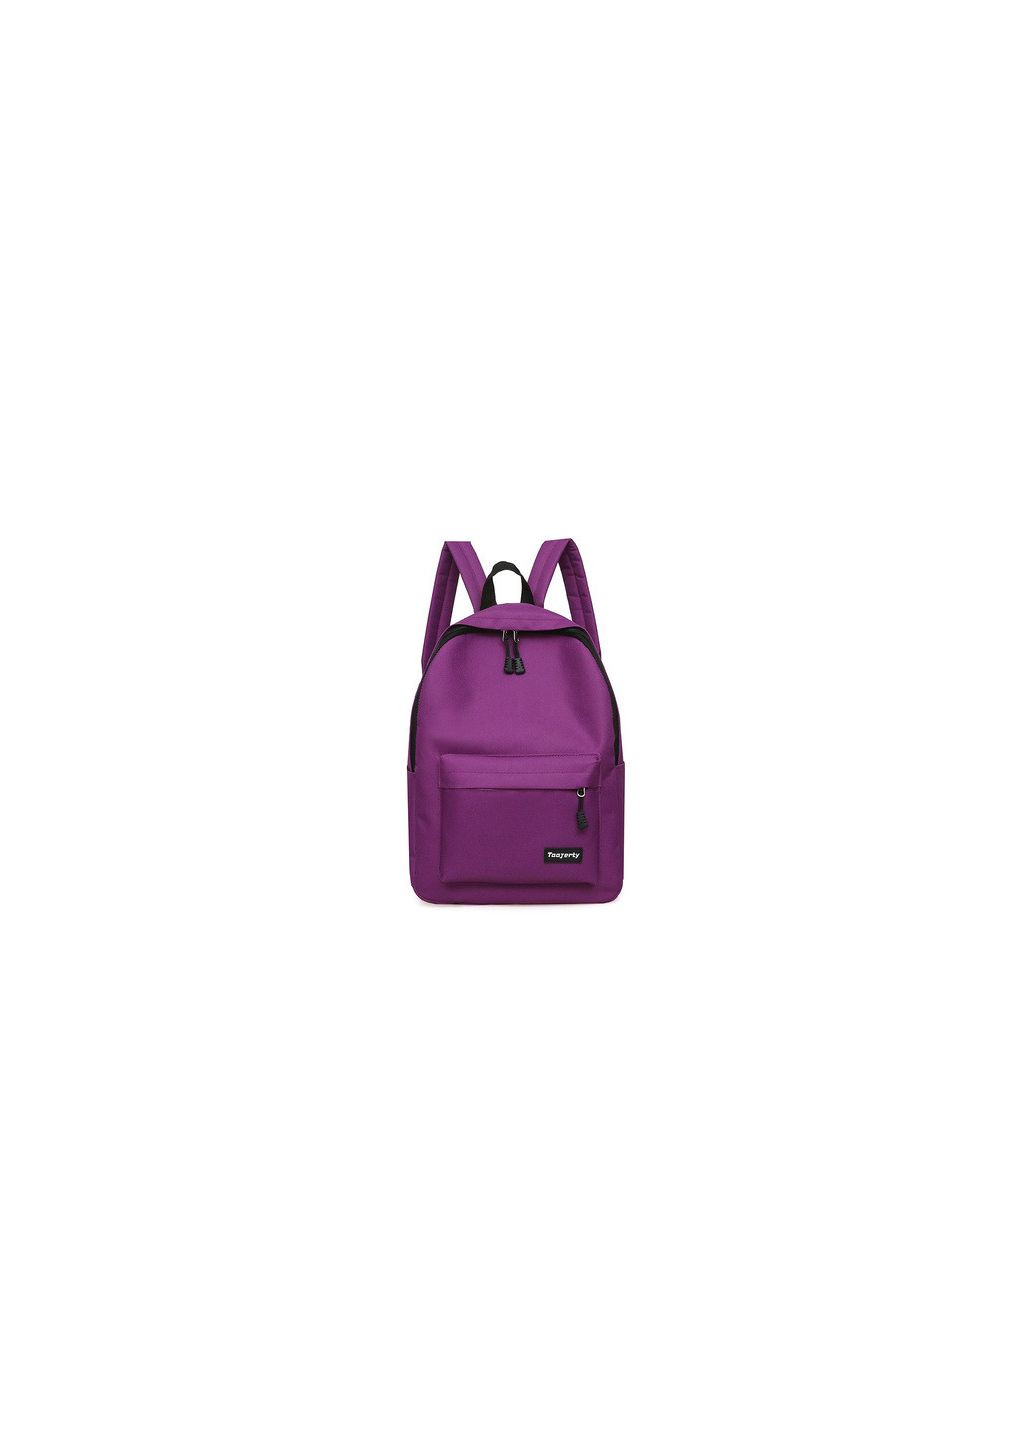 Рюкзак фиолетовый Taаjerty КиП (270016521)